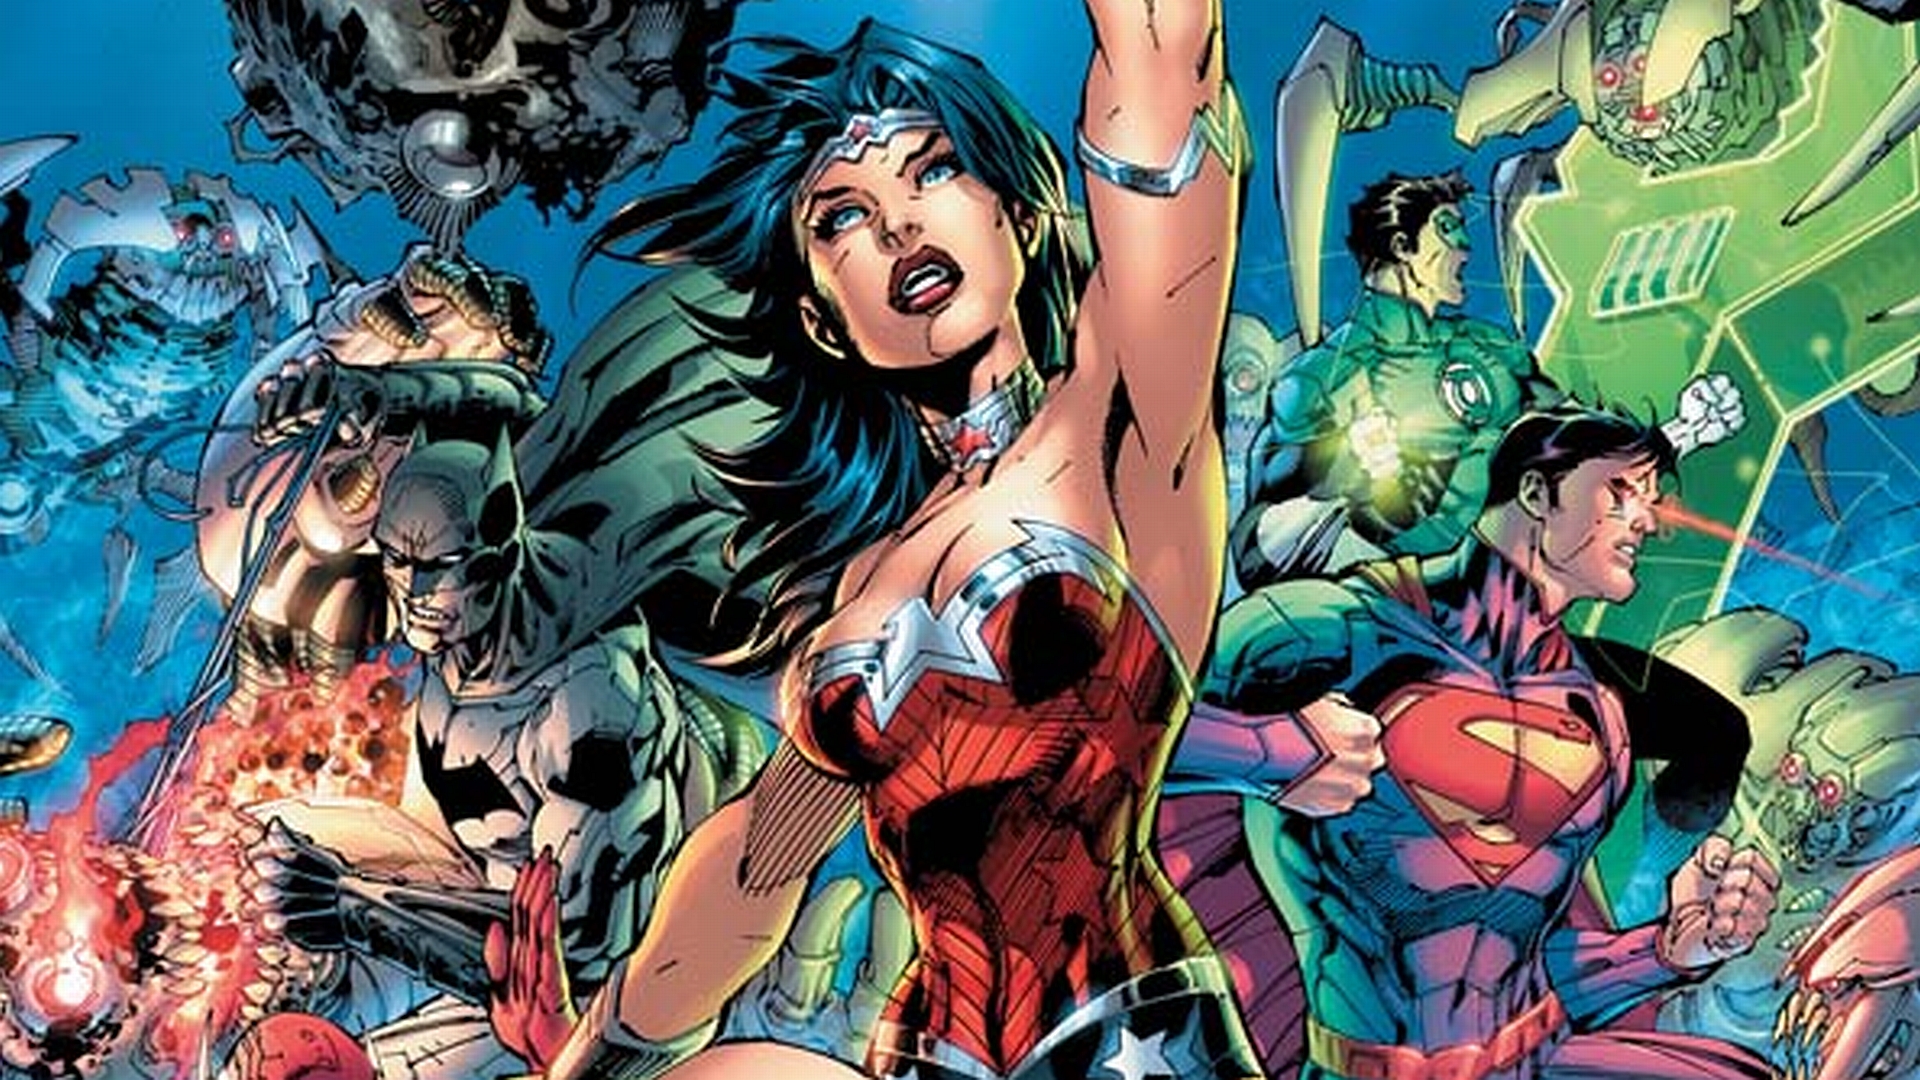 fond d'écran quadrinhos,des bandes dessinées,personnage fictif,super héros,fiction,ligue de justice